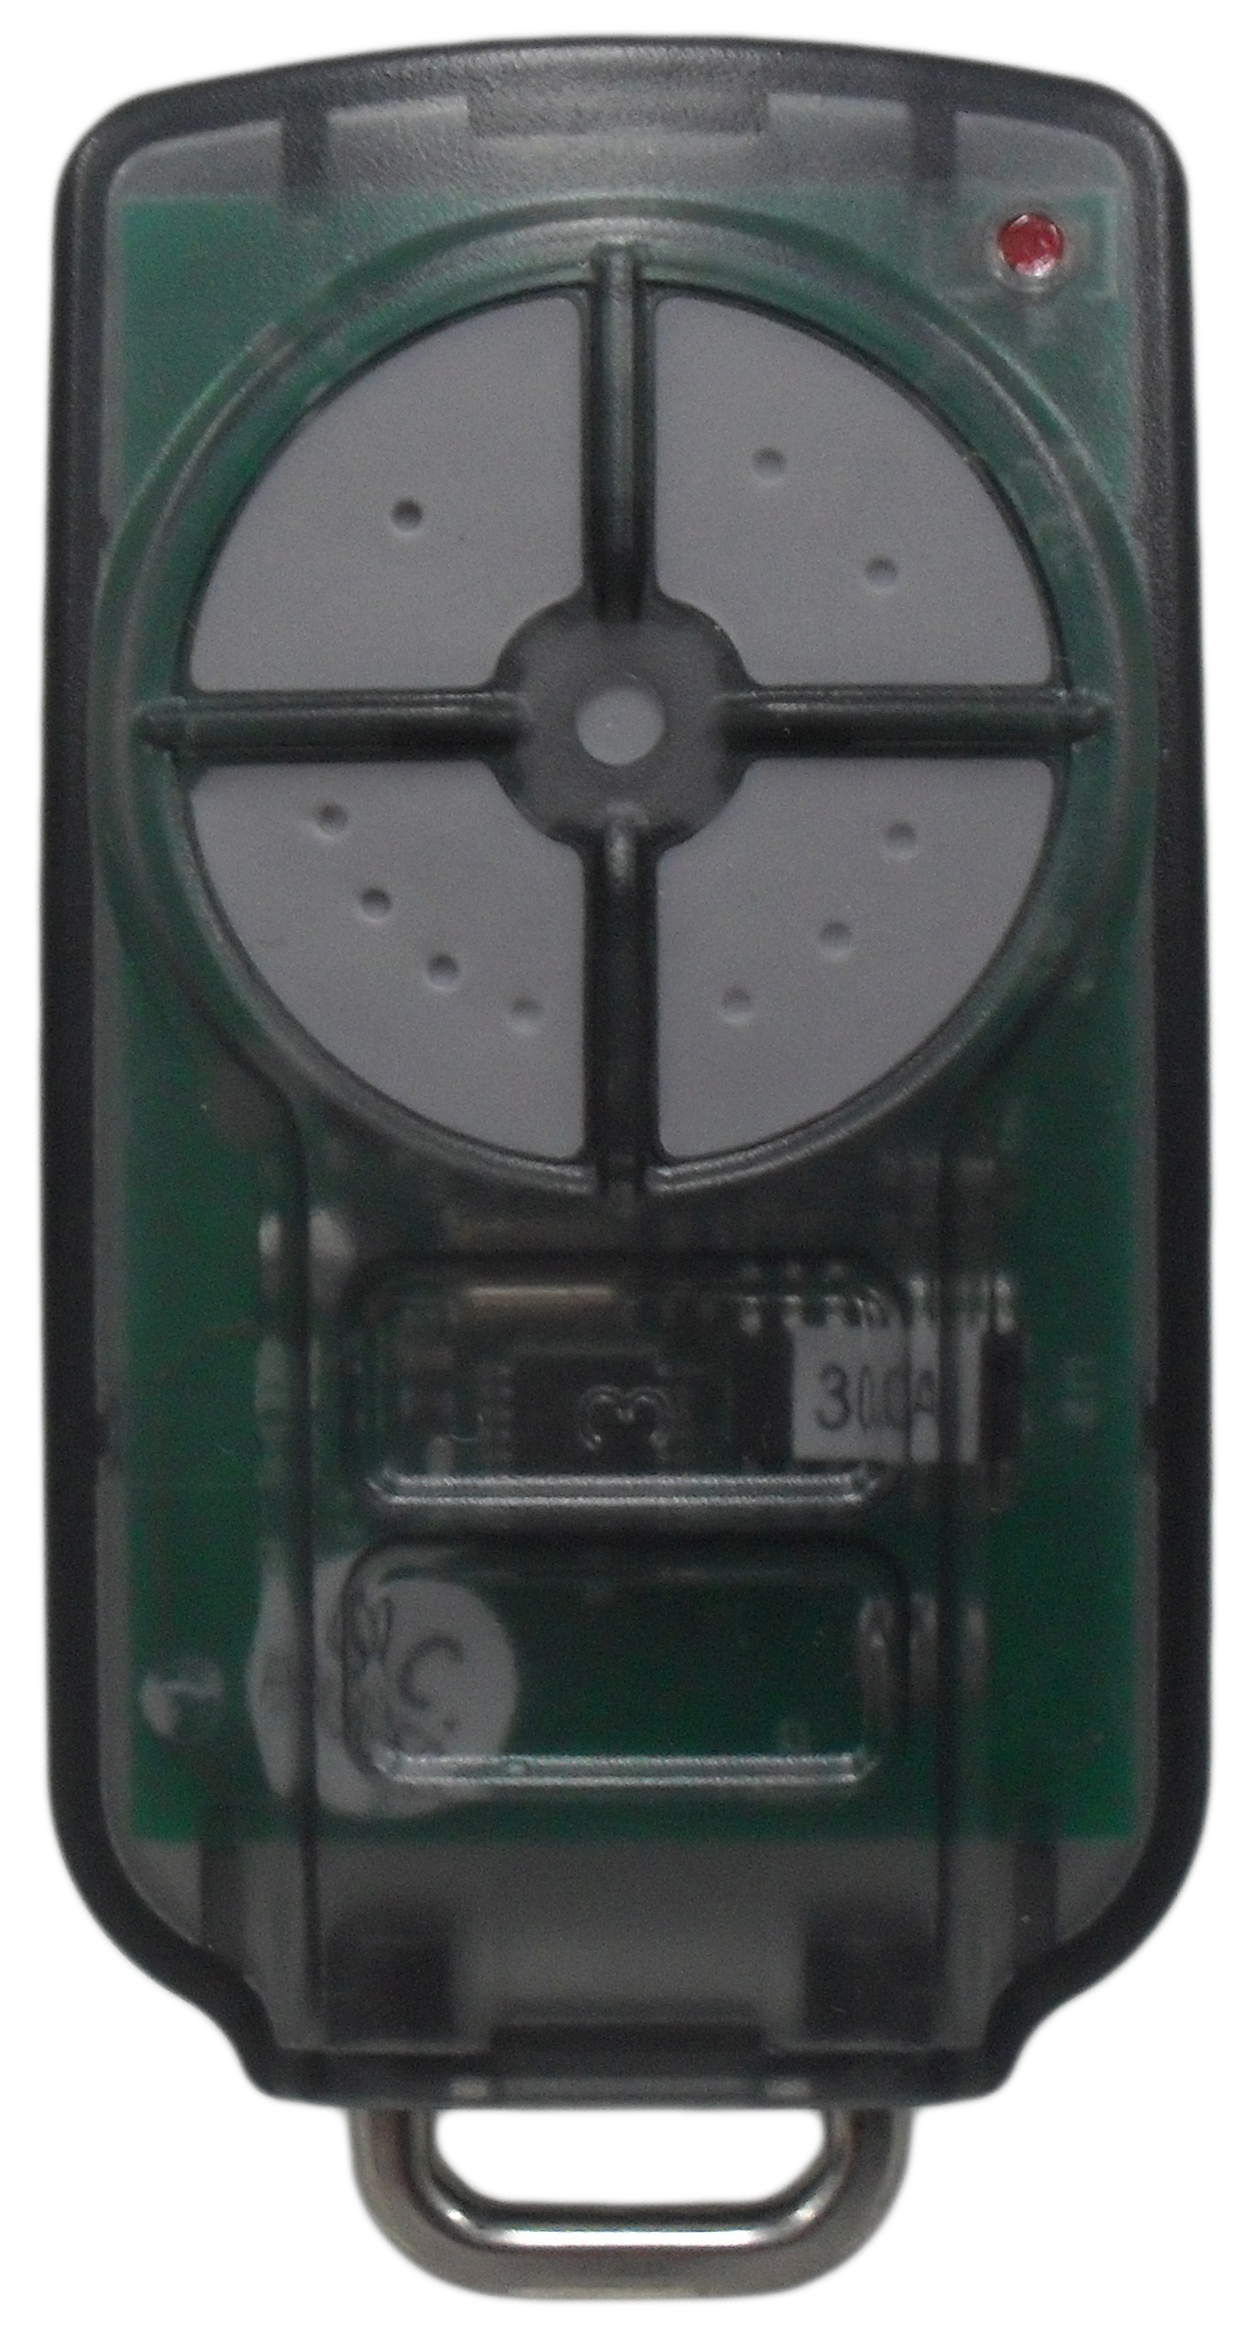 ATA-PTX5v2 Remote